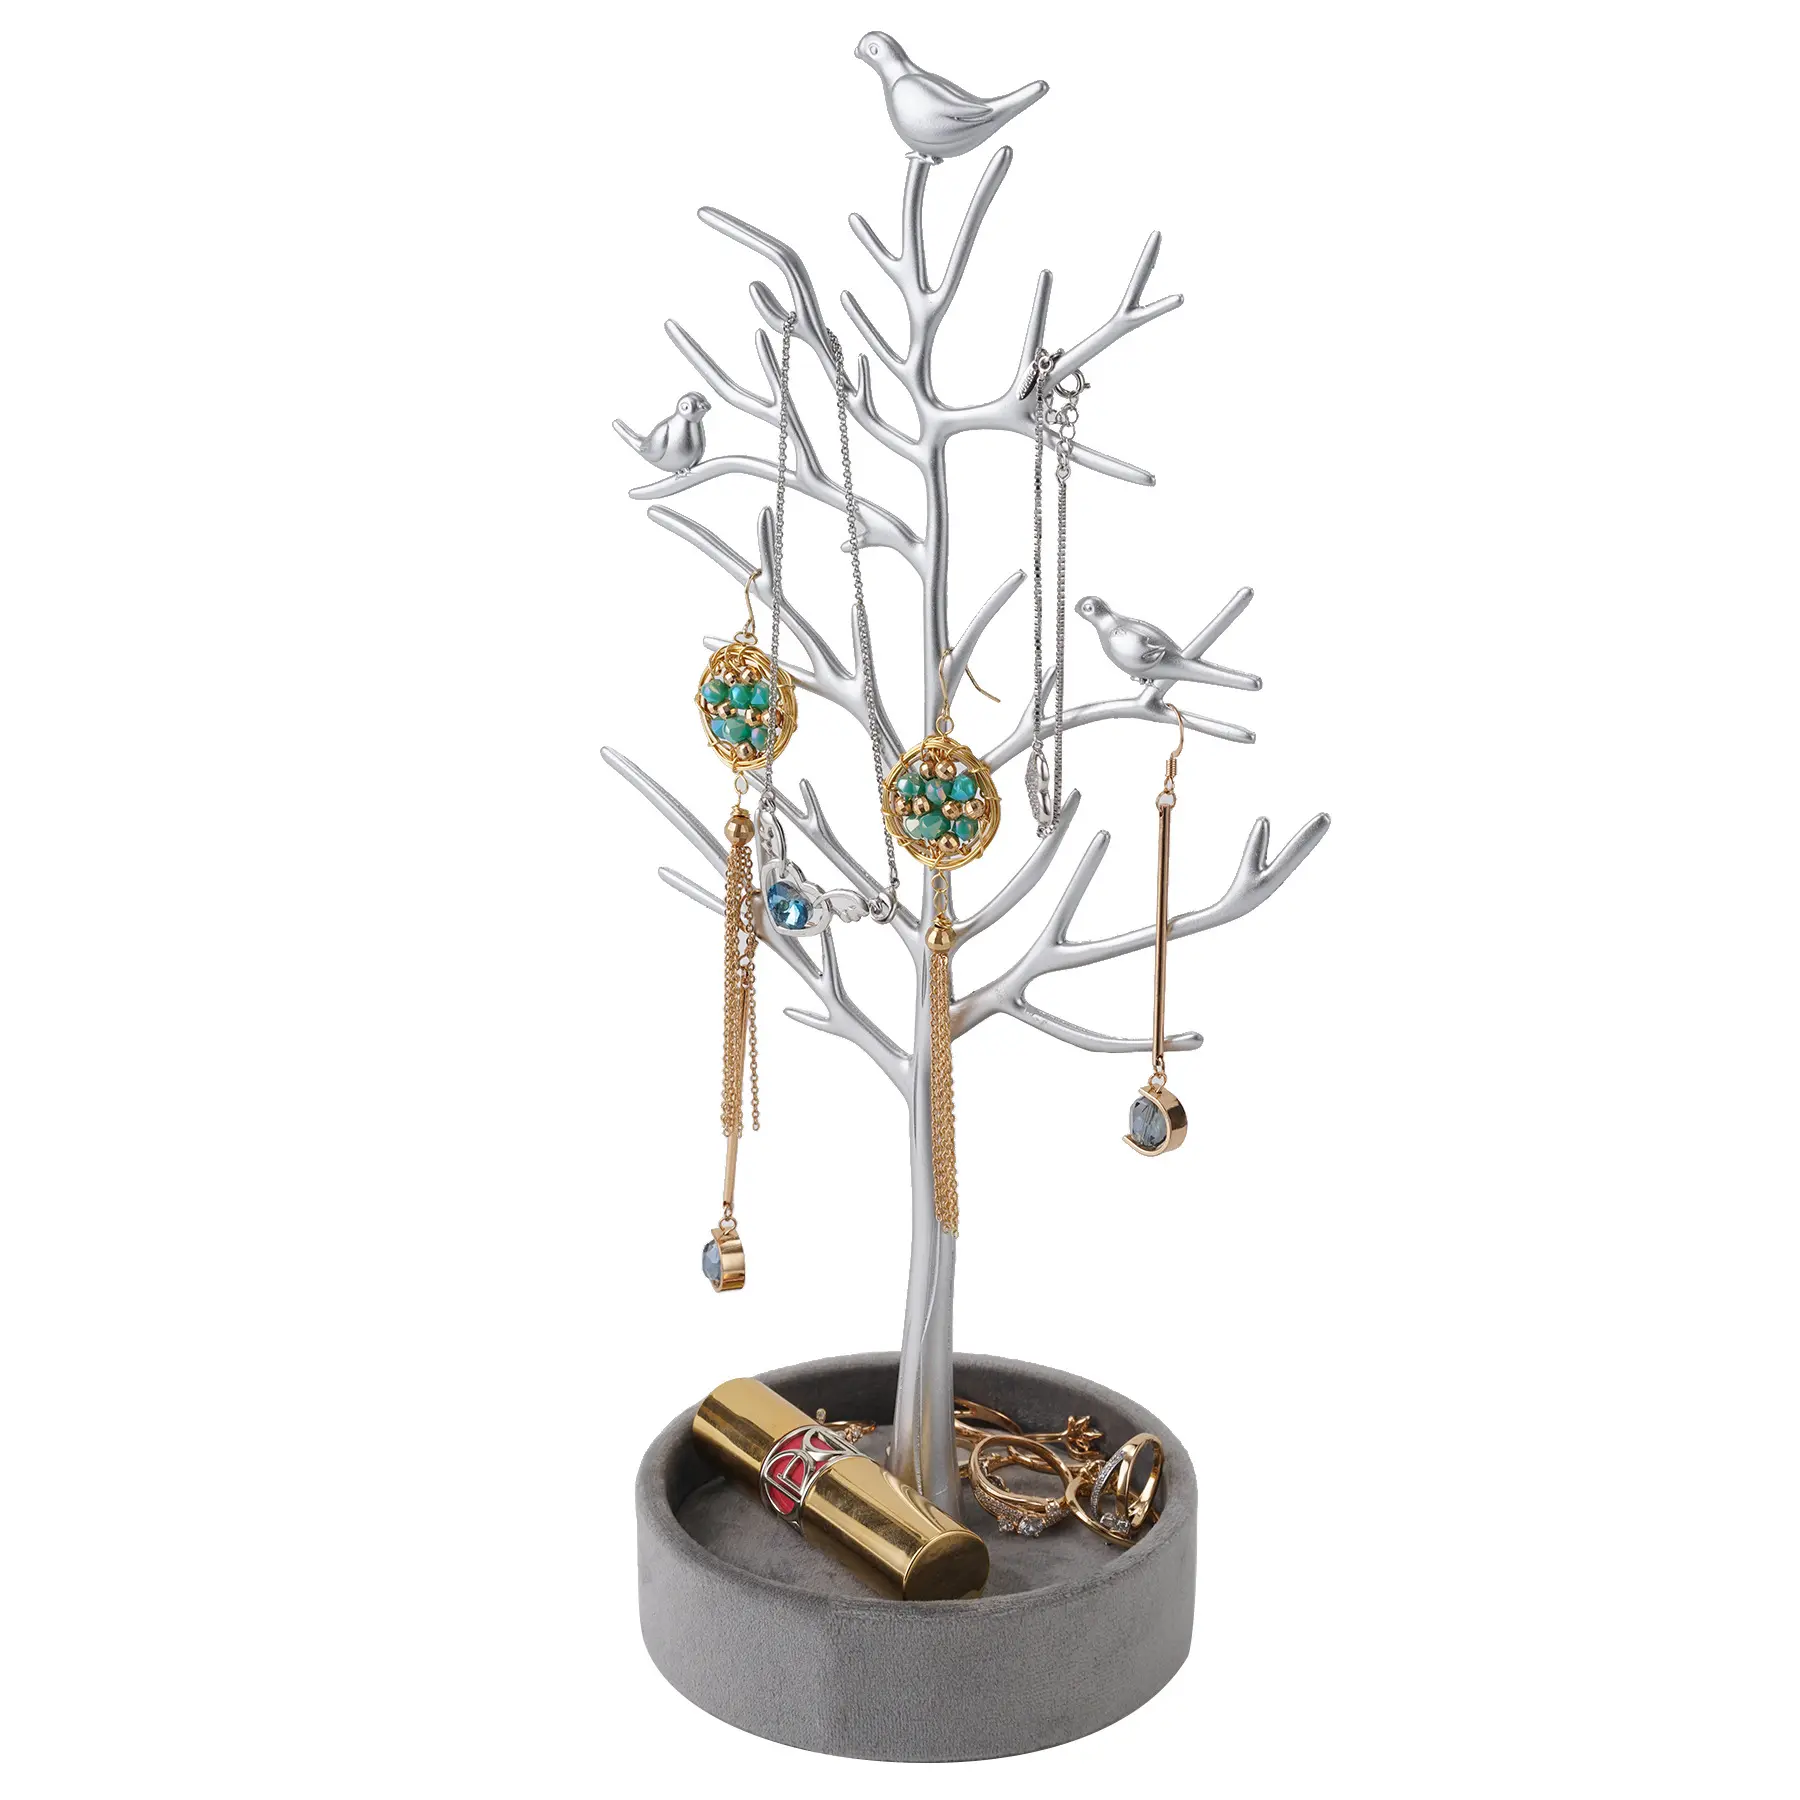 Soporte de joyería de Metal y plata en forma de árbol, organizador de joyería multifuncional